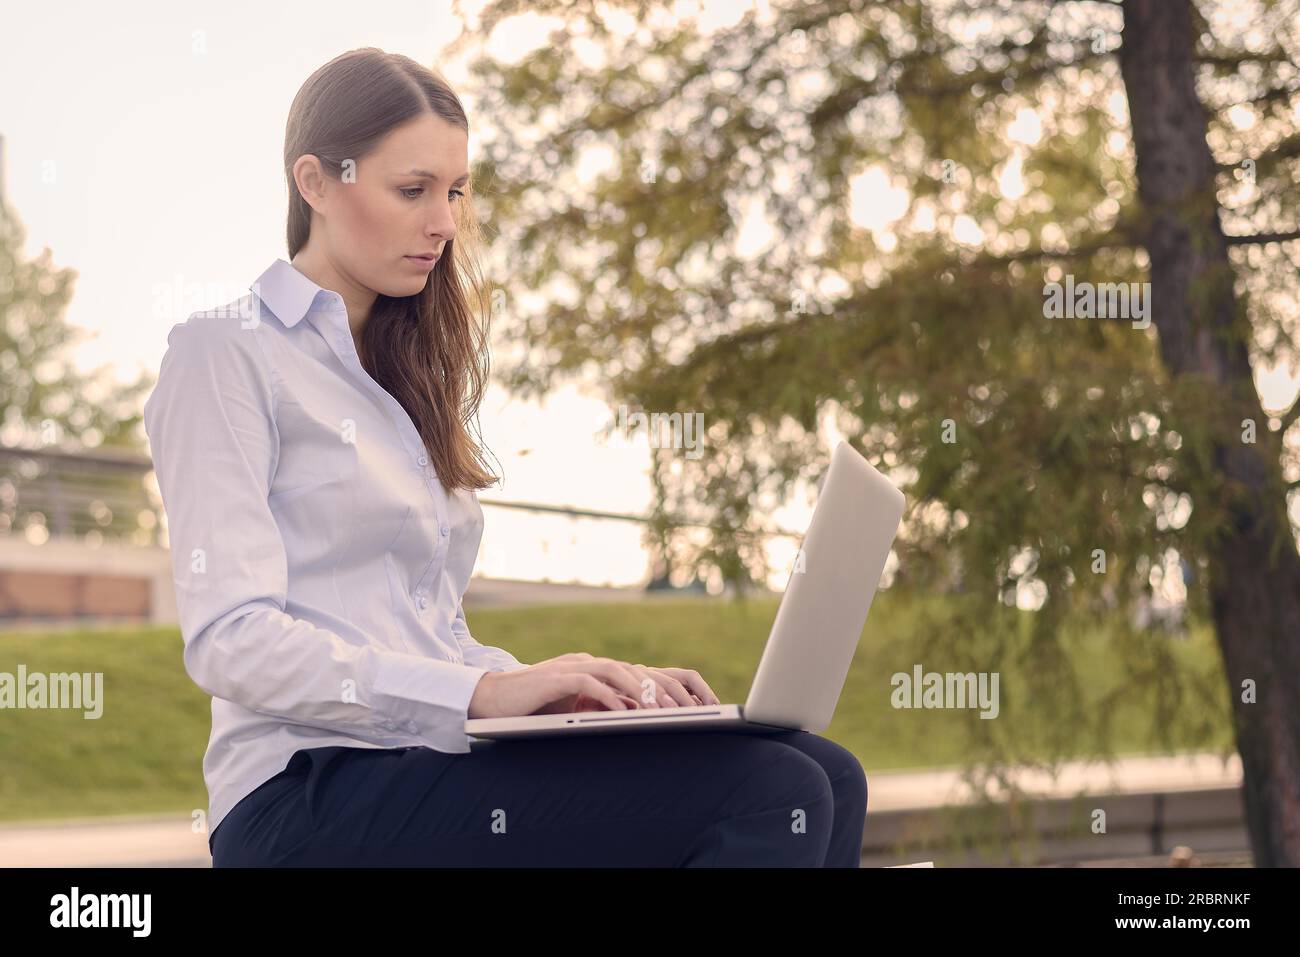 Attraktive junge Frau trägt formelle Kleidung während der Arbeit im Freien auf einem Laptop, mit einer drahtlosen Verbindung mit dem Internet, das in einer Schönen Tag des Sommers Stockfoto